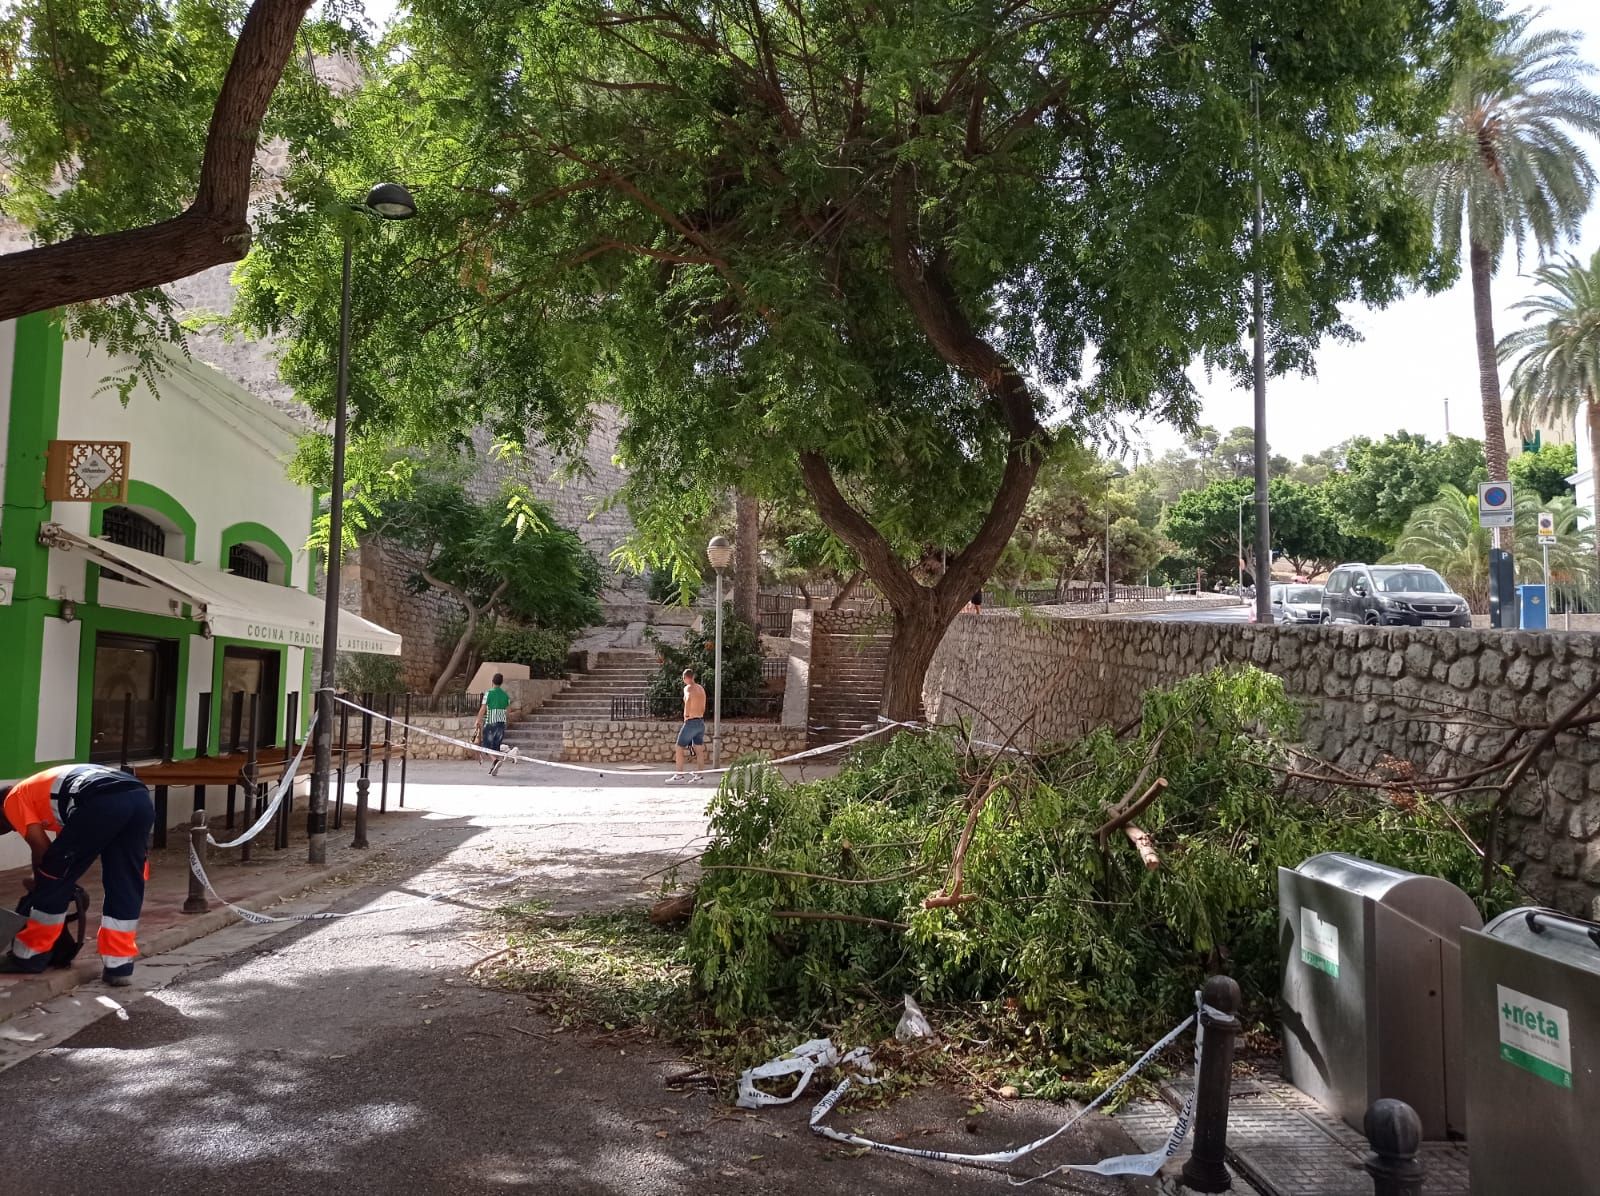 Intensa jornada con barcos varados, hundidos y árboles caídos por el viento en Ibiza y Formentera